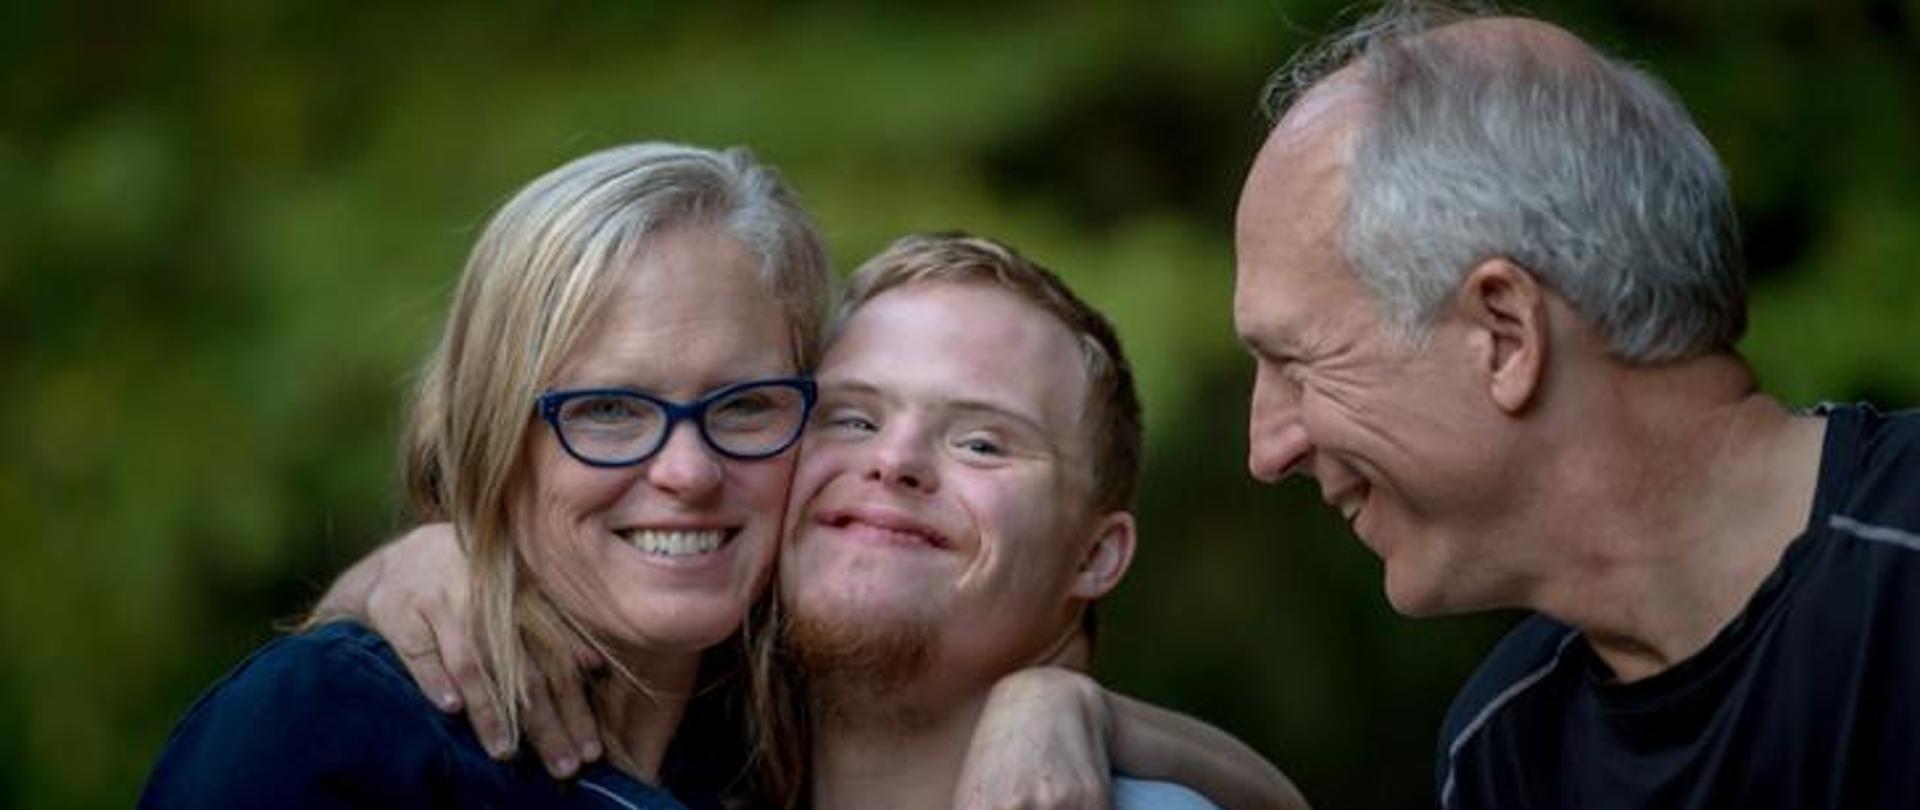 Rodzina. Matka przytula syna z zespołem Downa. Obok nich uśmiechnięty tata.